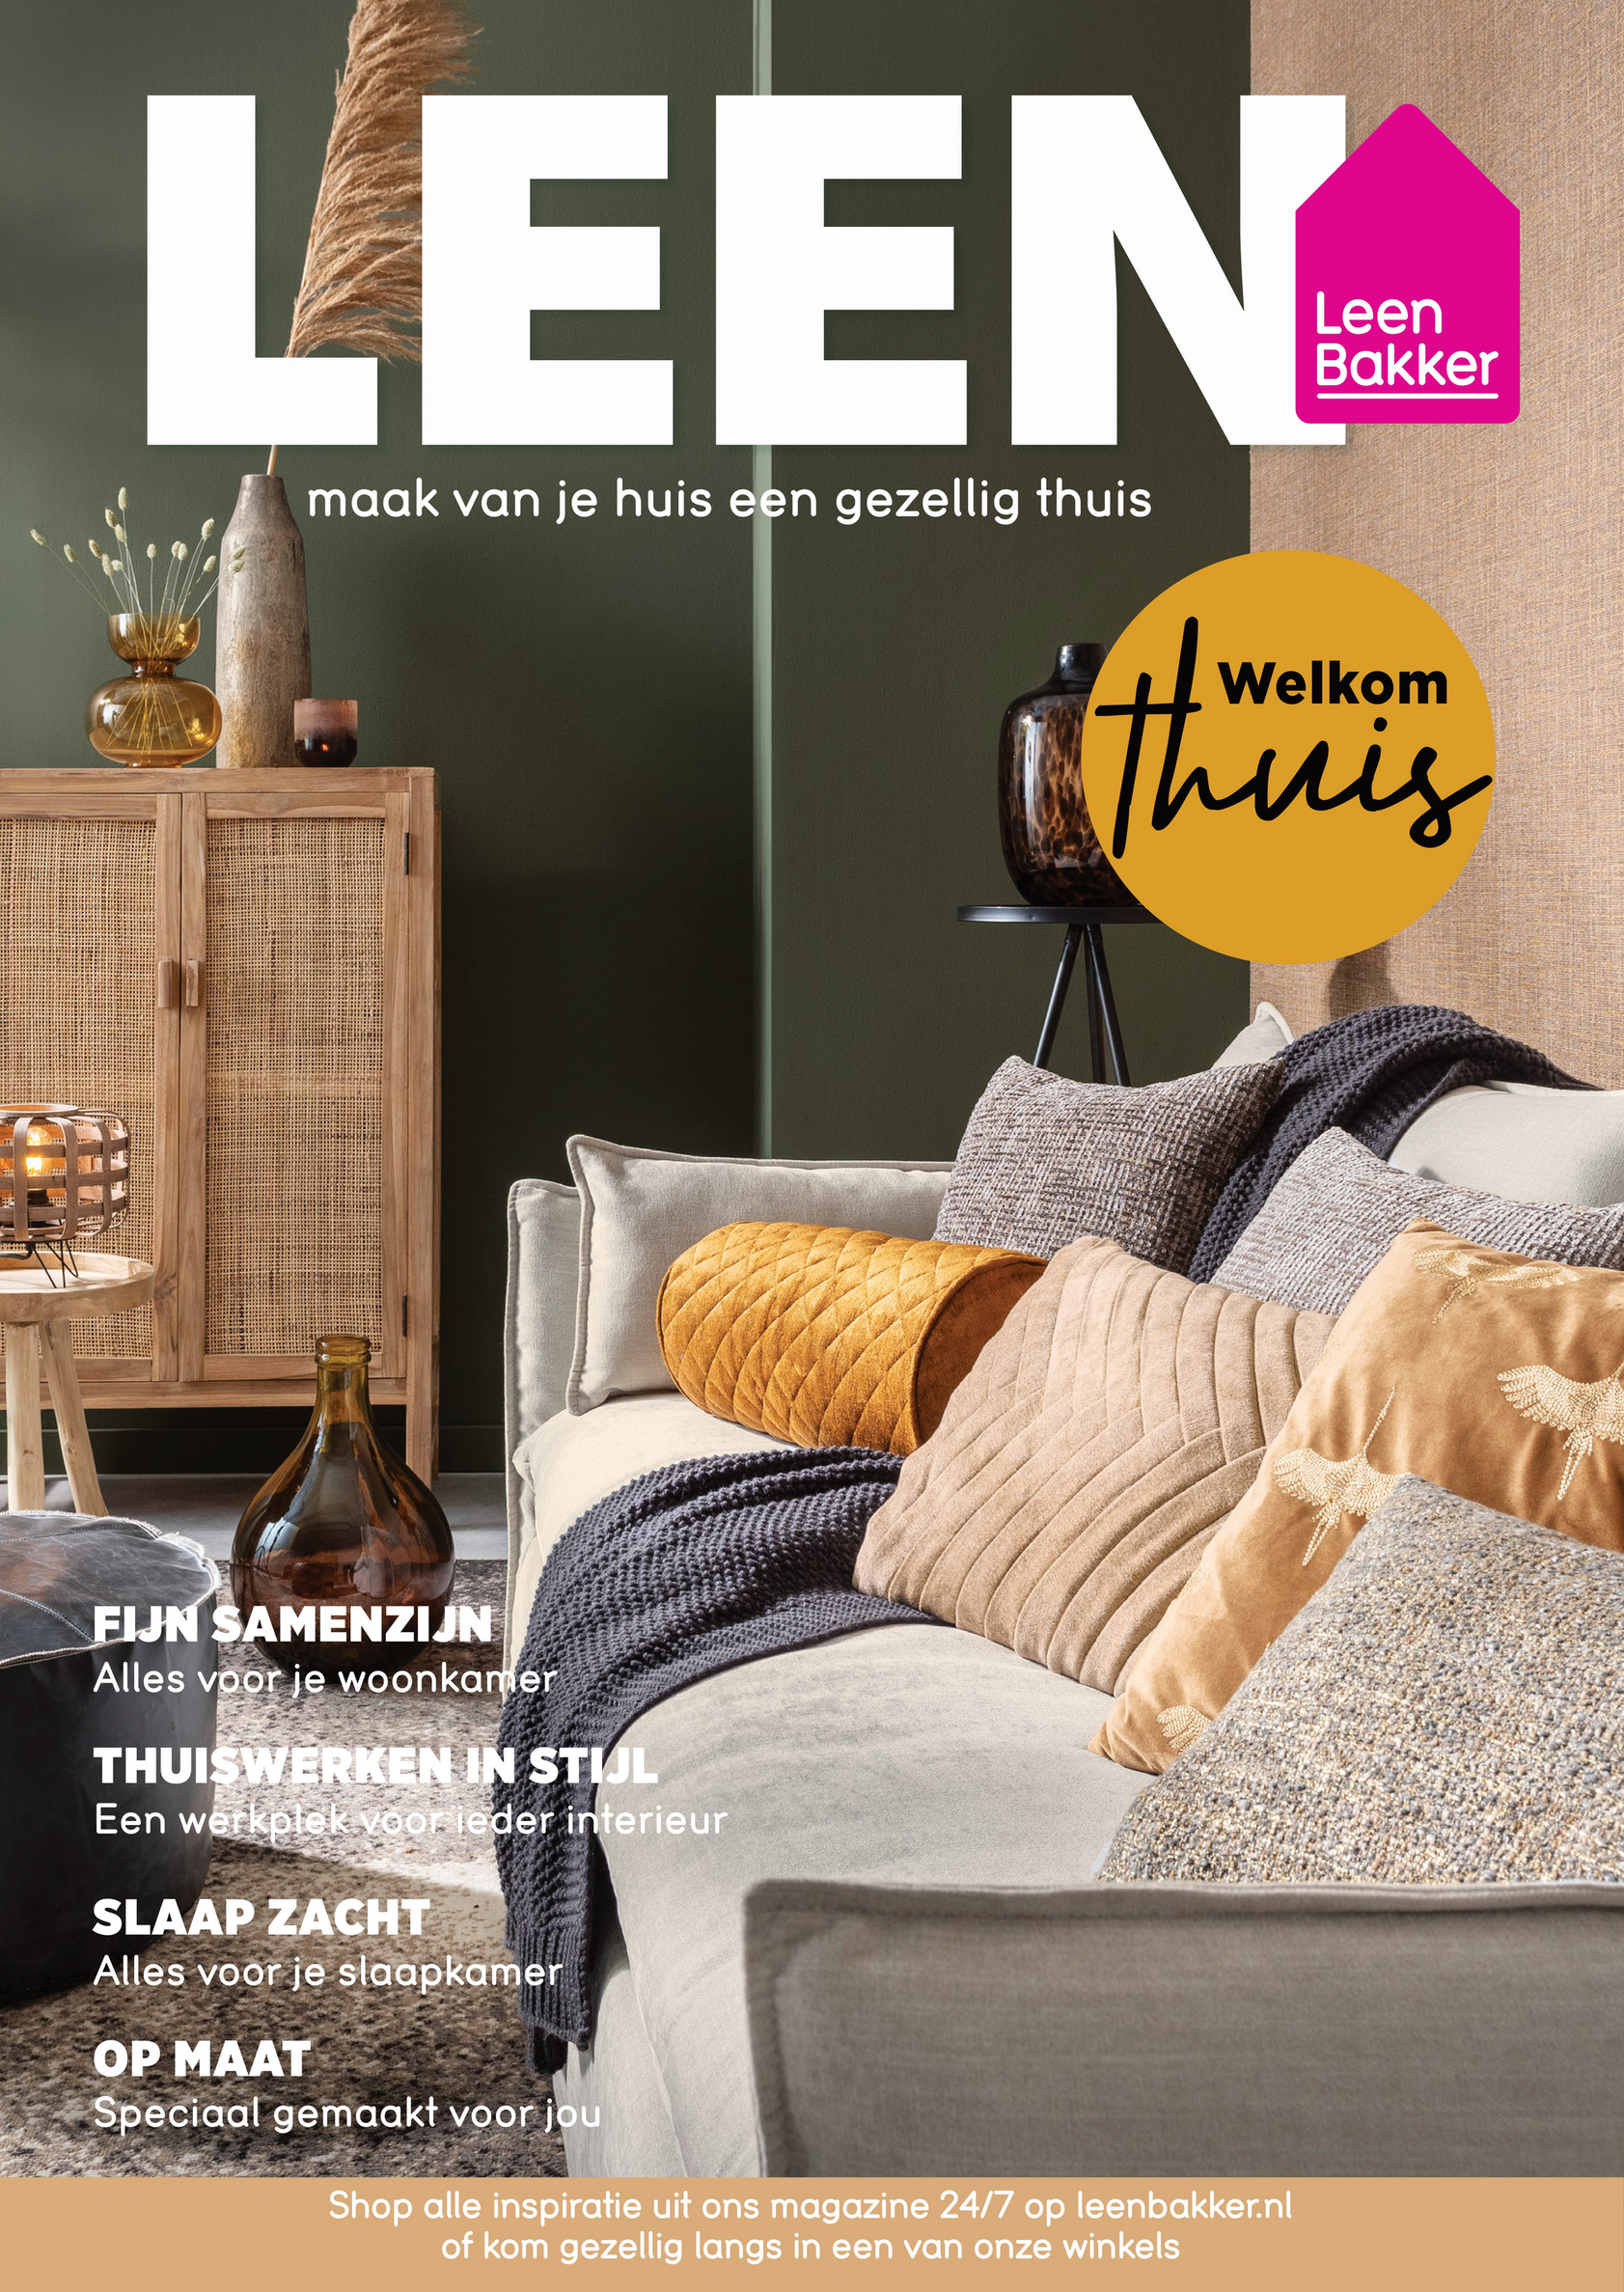 Aanvankelijk Kinderrijmpjes Liever Leen Bakker Nederland (NL) - Leen Bakker Merkmagazine Week 40 - Pagina 6